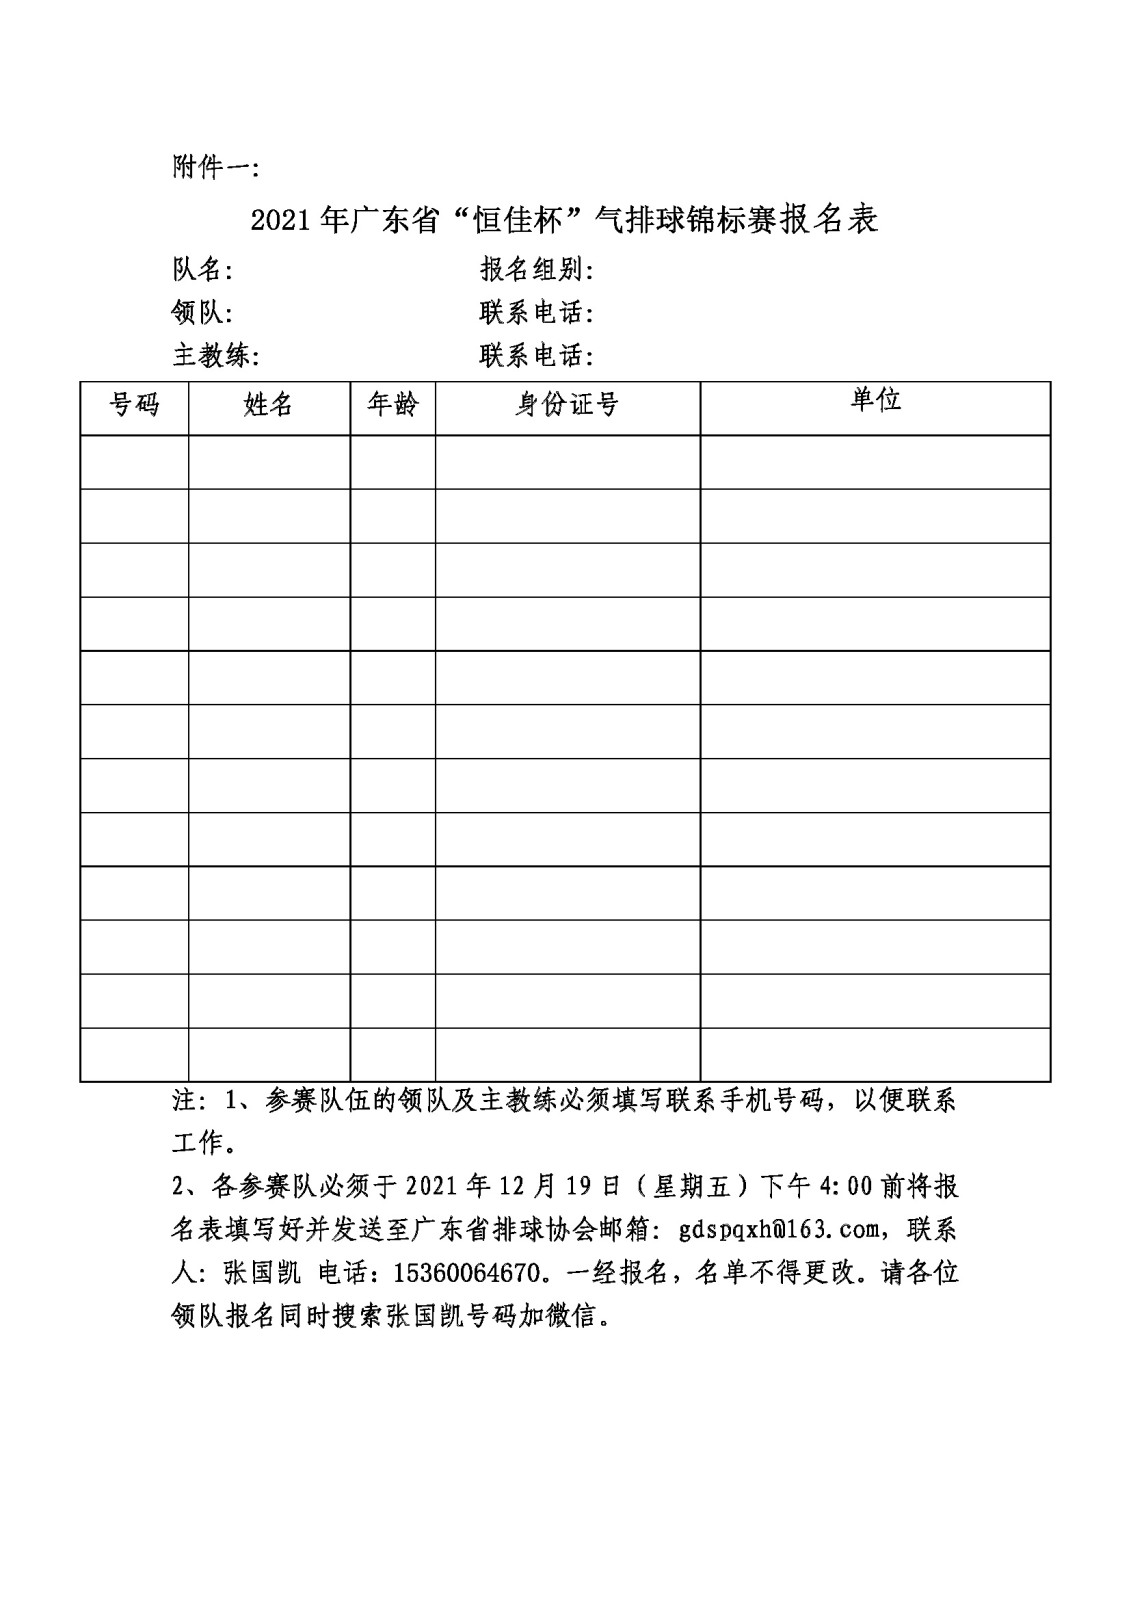 2021年广东省“恒佳杯”气排球锦标赛竞赛规程_页面_7.jpg